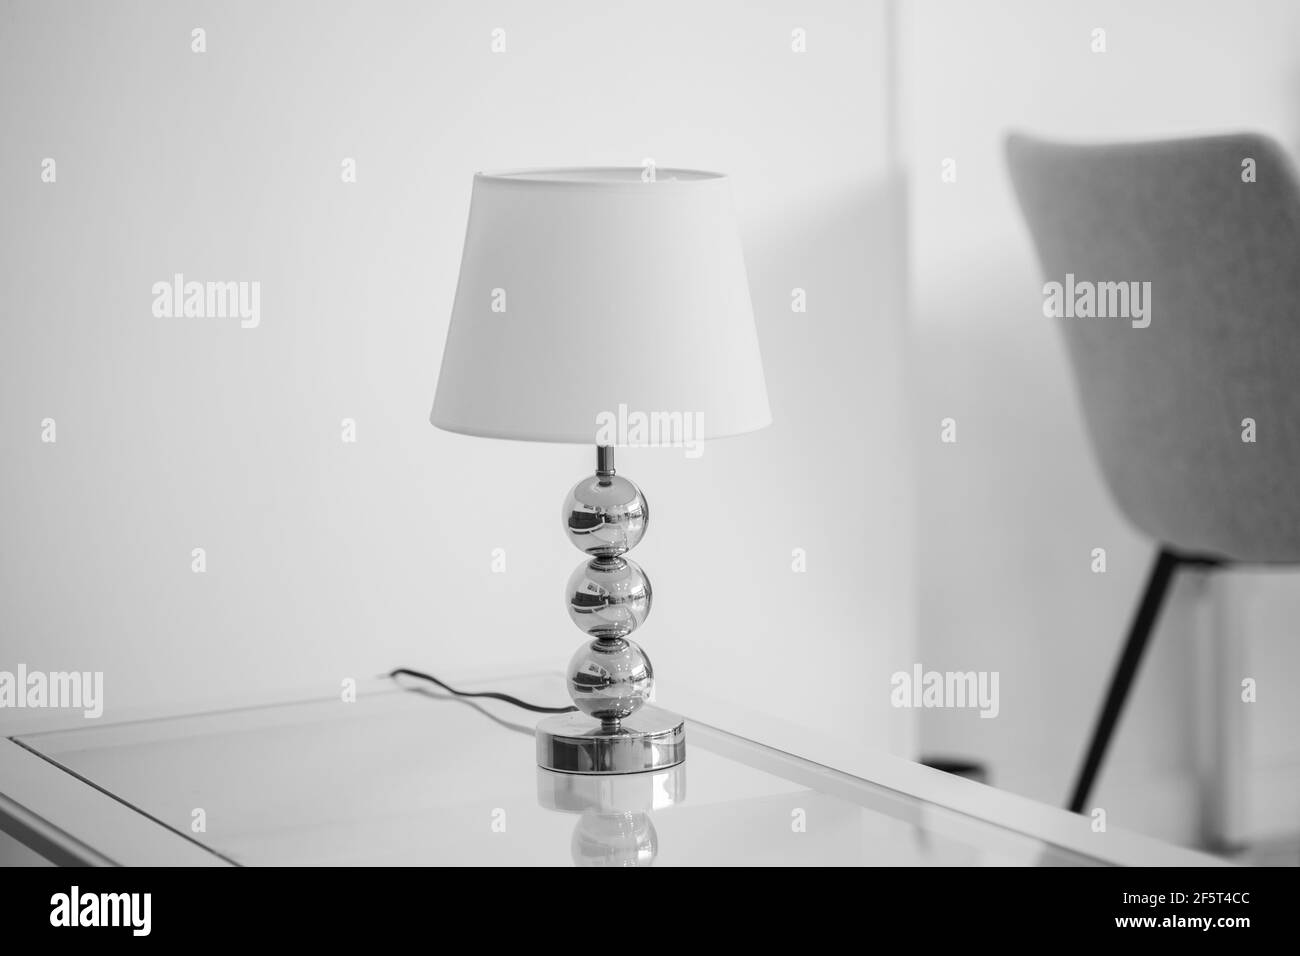 Schwarz Lampen in helles Schlafzimmer Innenraum. Drei modernen schwarzen  Lampen aufhängen Stockfotografie - Alamy